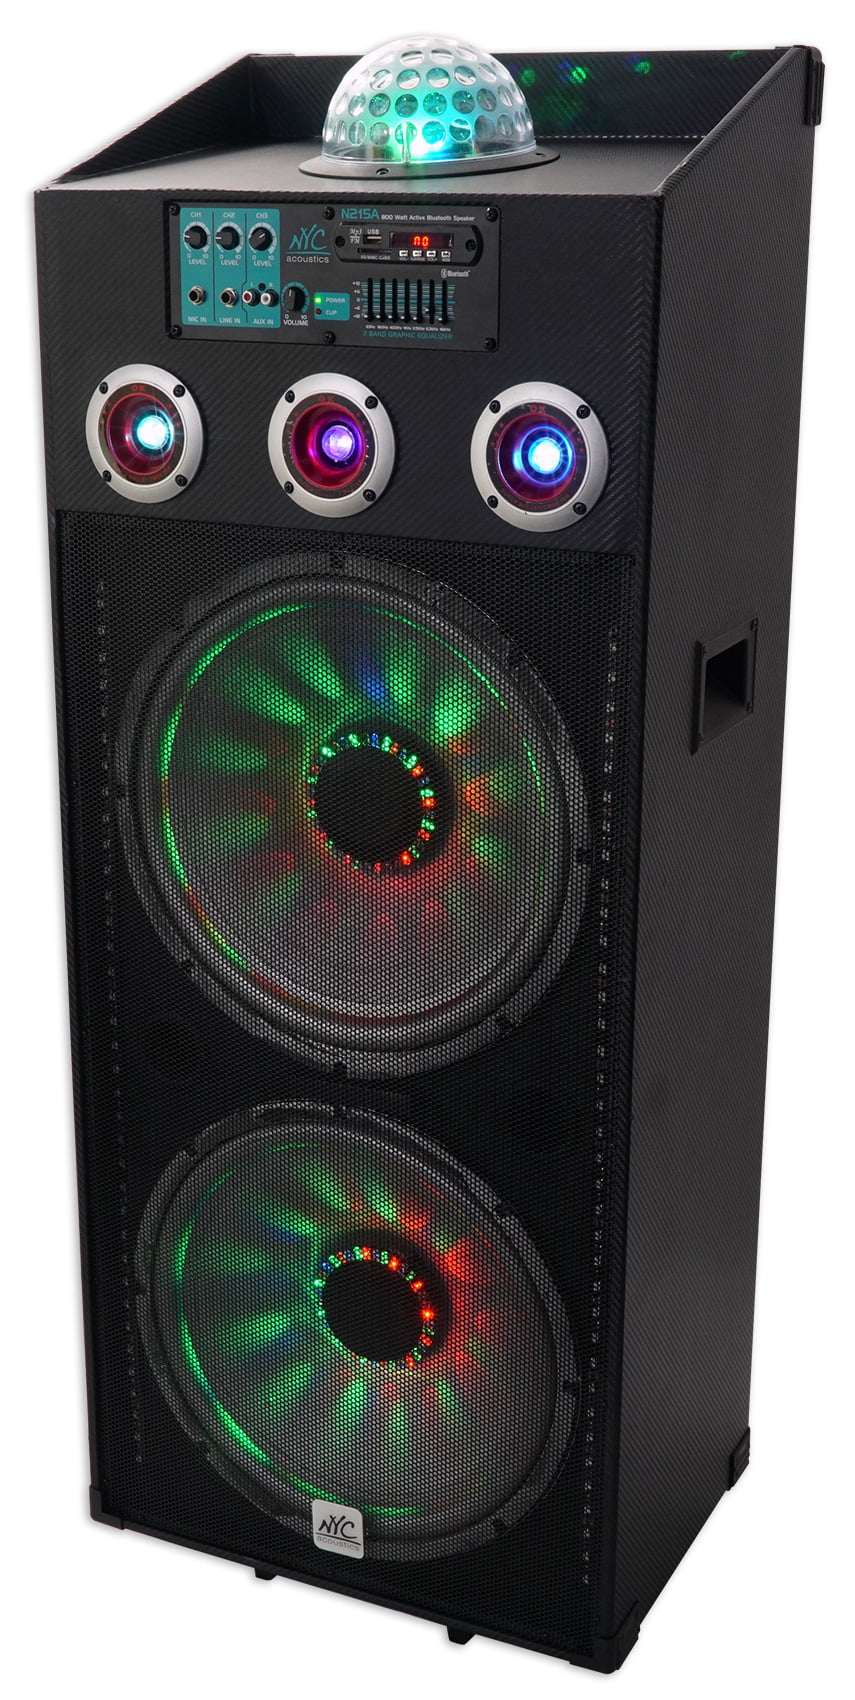 GAS-260-Haut-parleur audio professionnel, 12 pouces, 800W, pour karaoké,  bonne qualité, conférence, performance sur scène, nouveau design